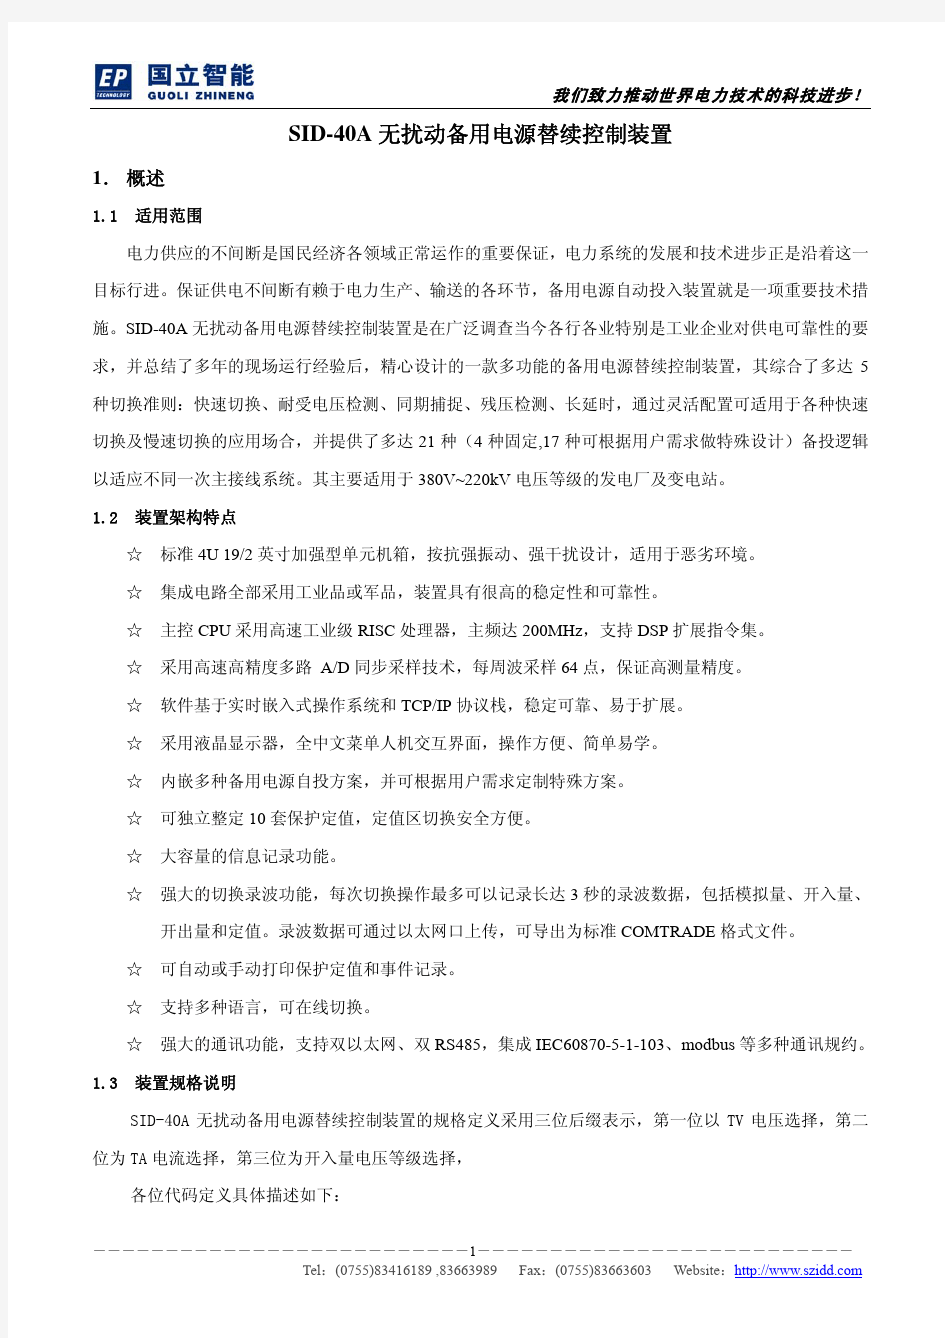 SID-40A中文技术说明书V1.43